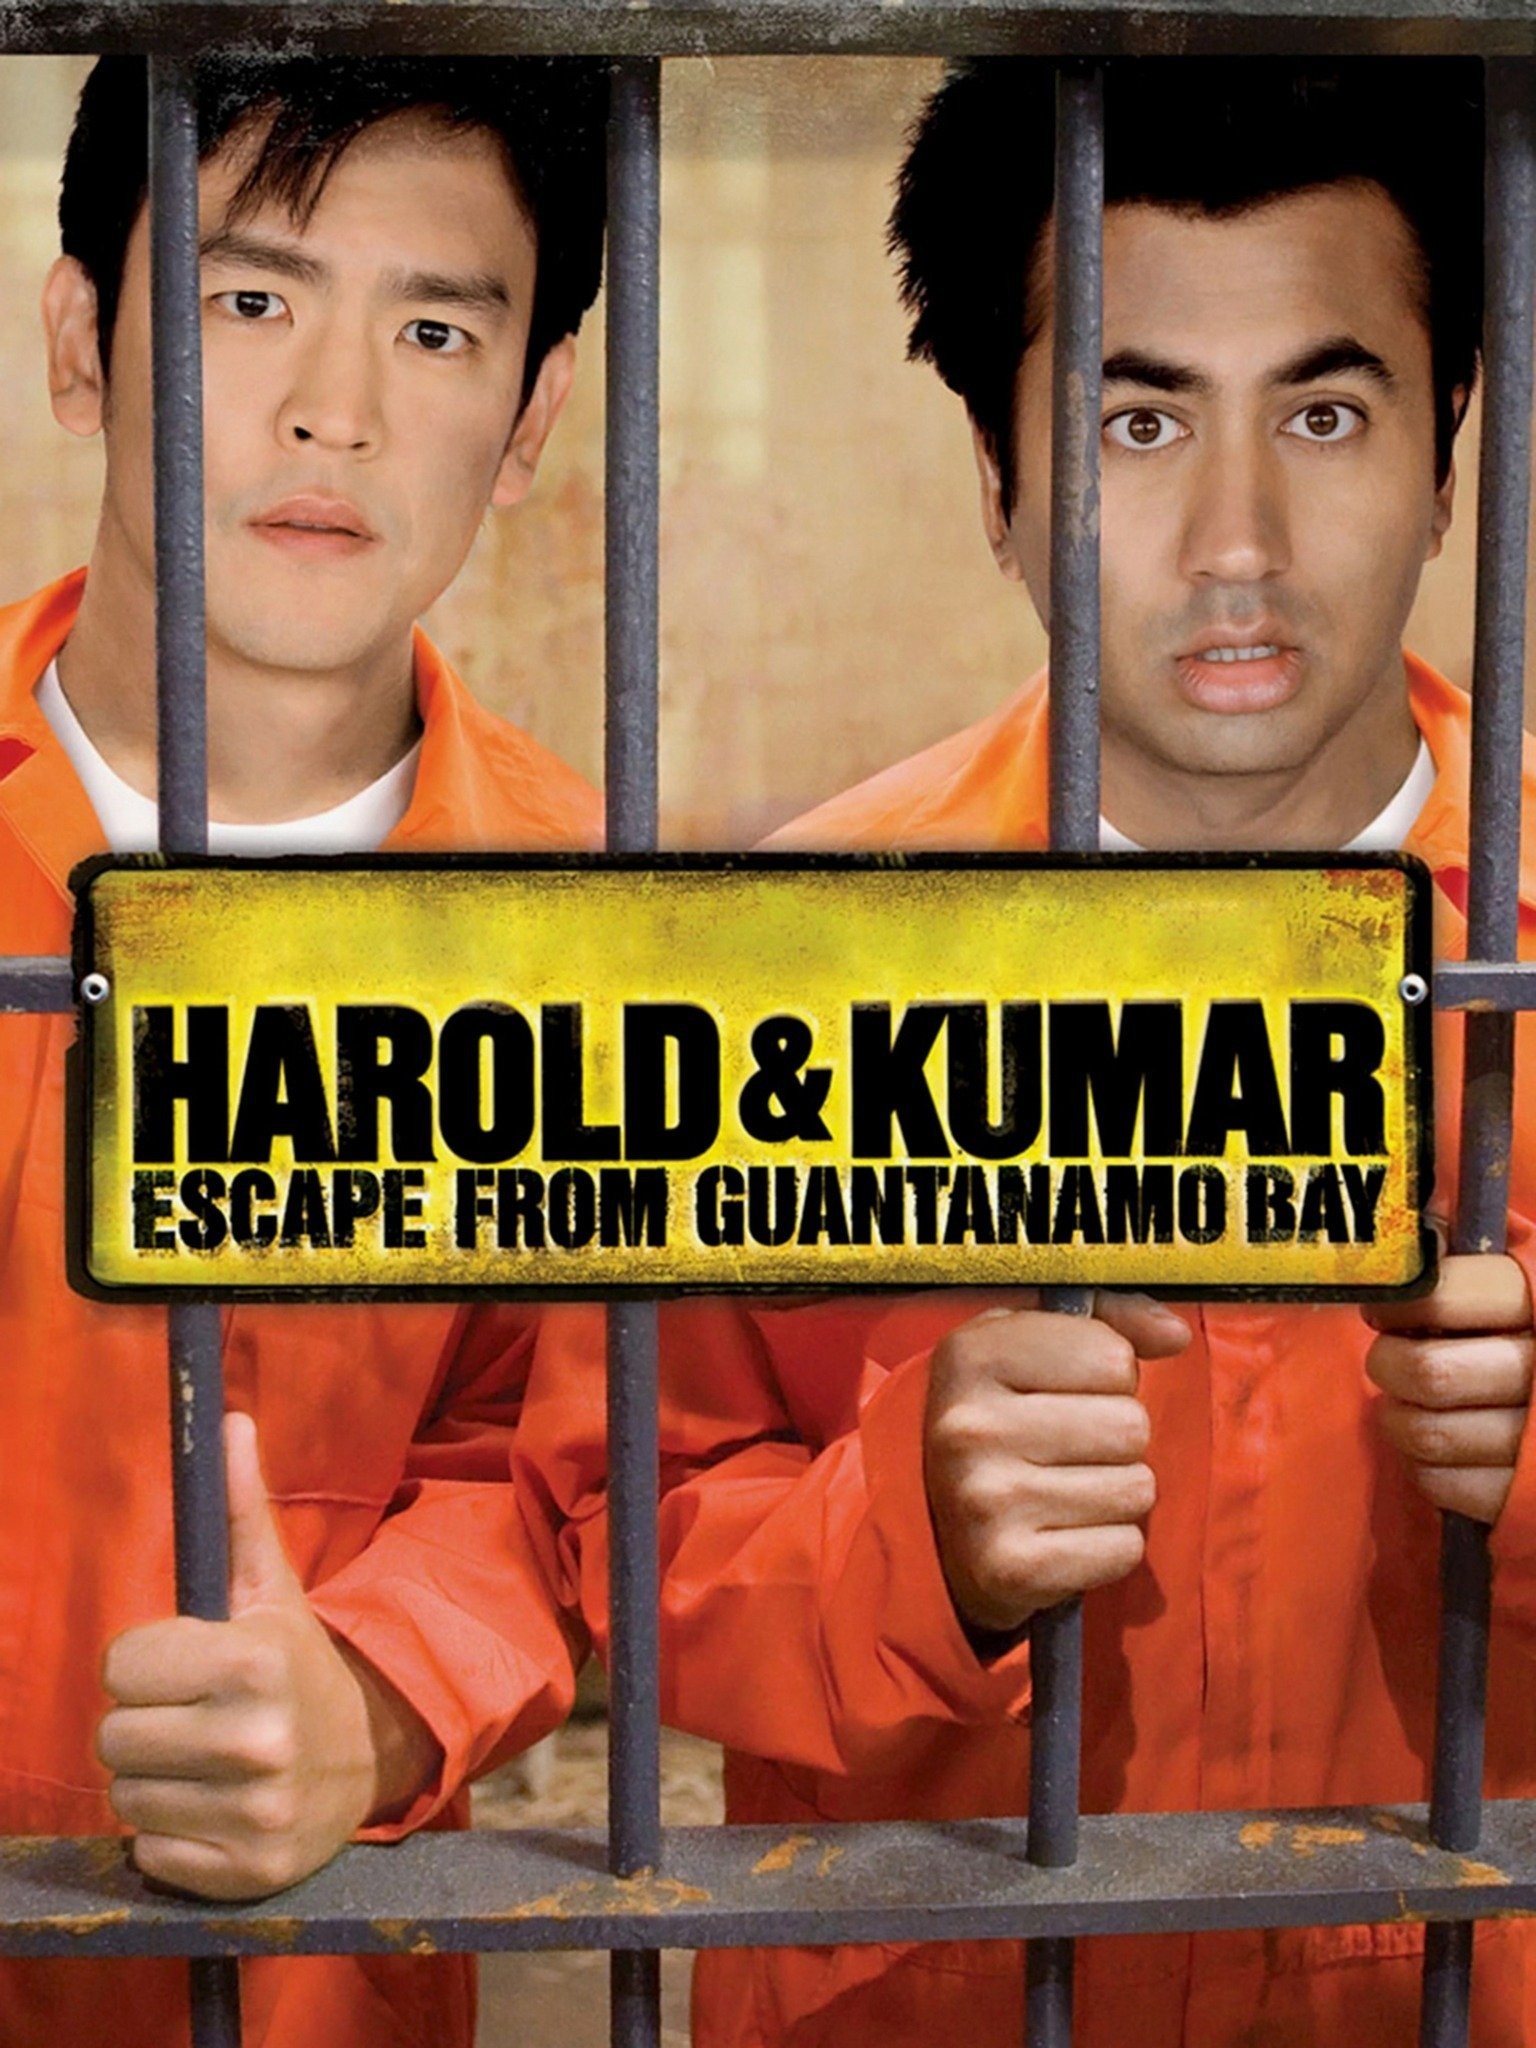 Harold & Kumar Escape From Guantanamo Bay - Rotten Tomatoes